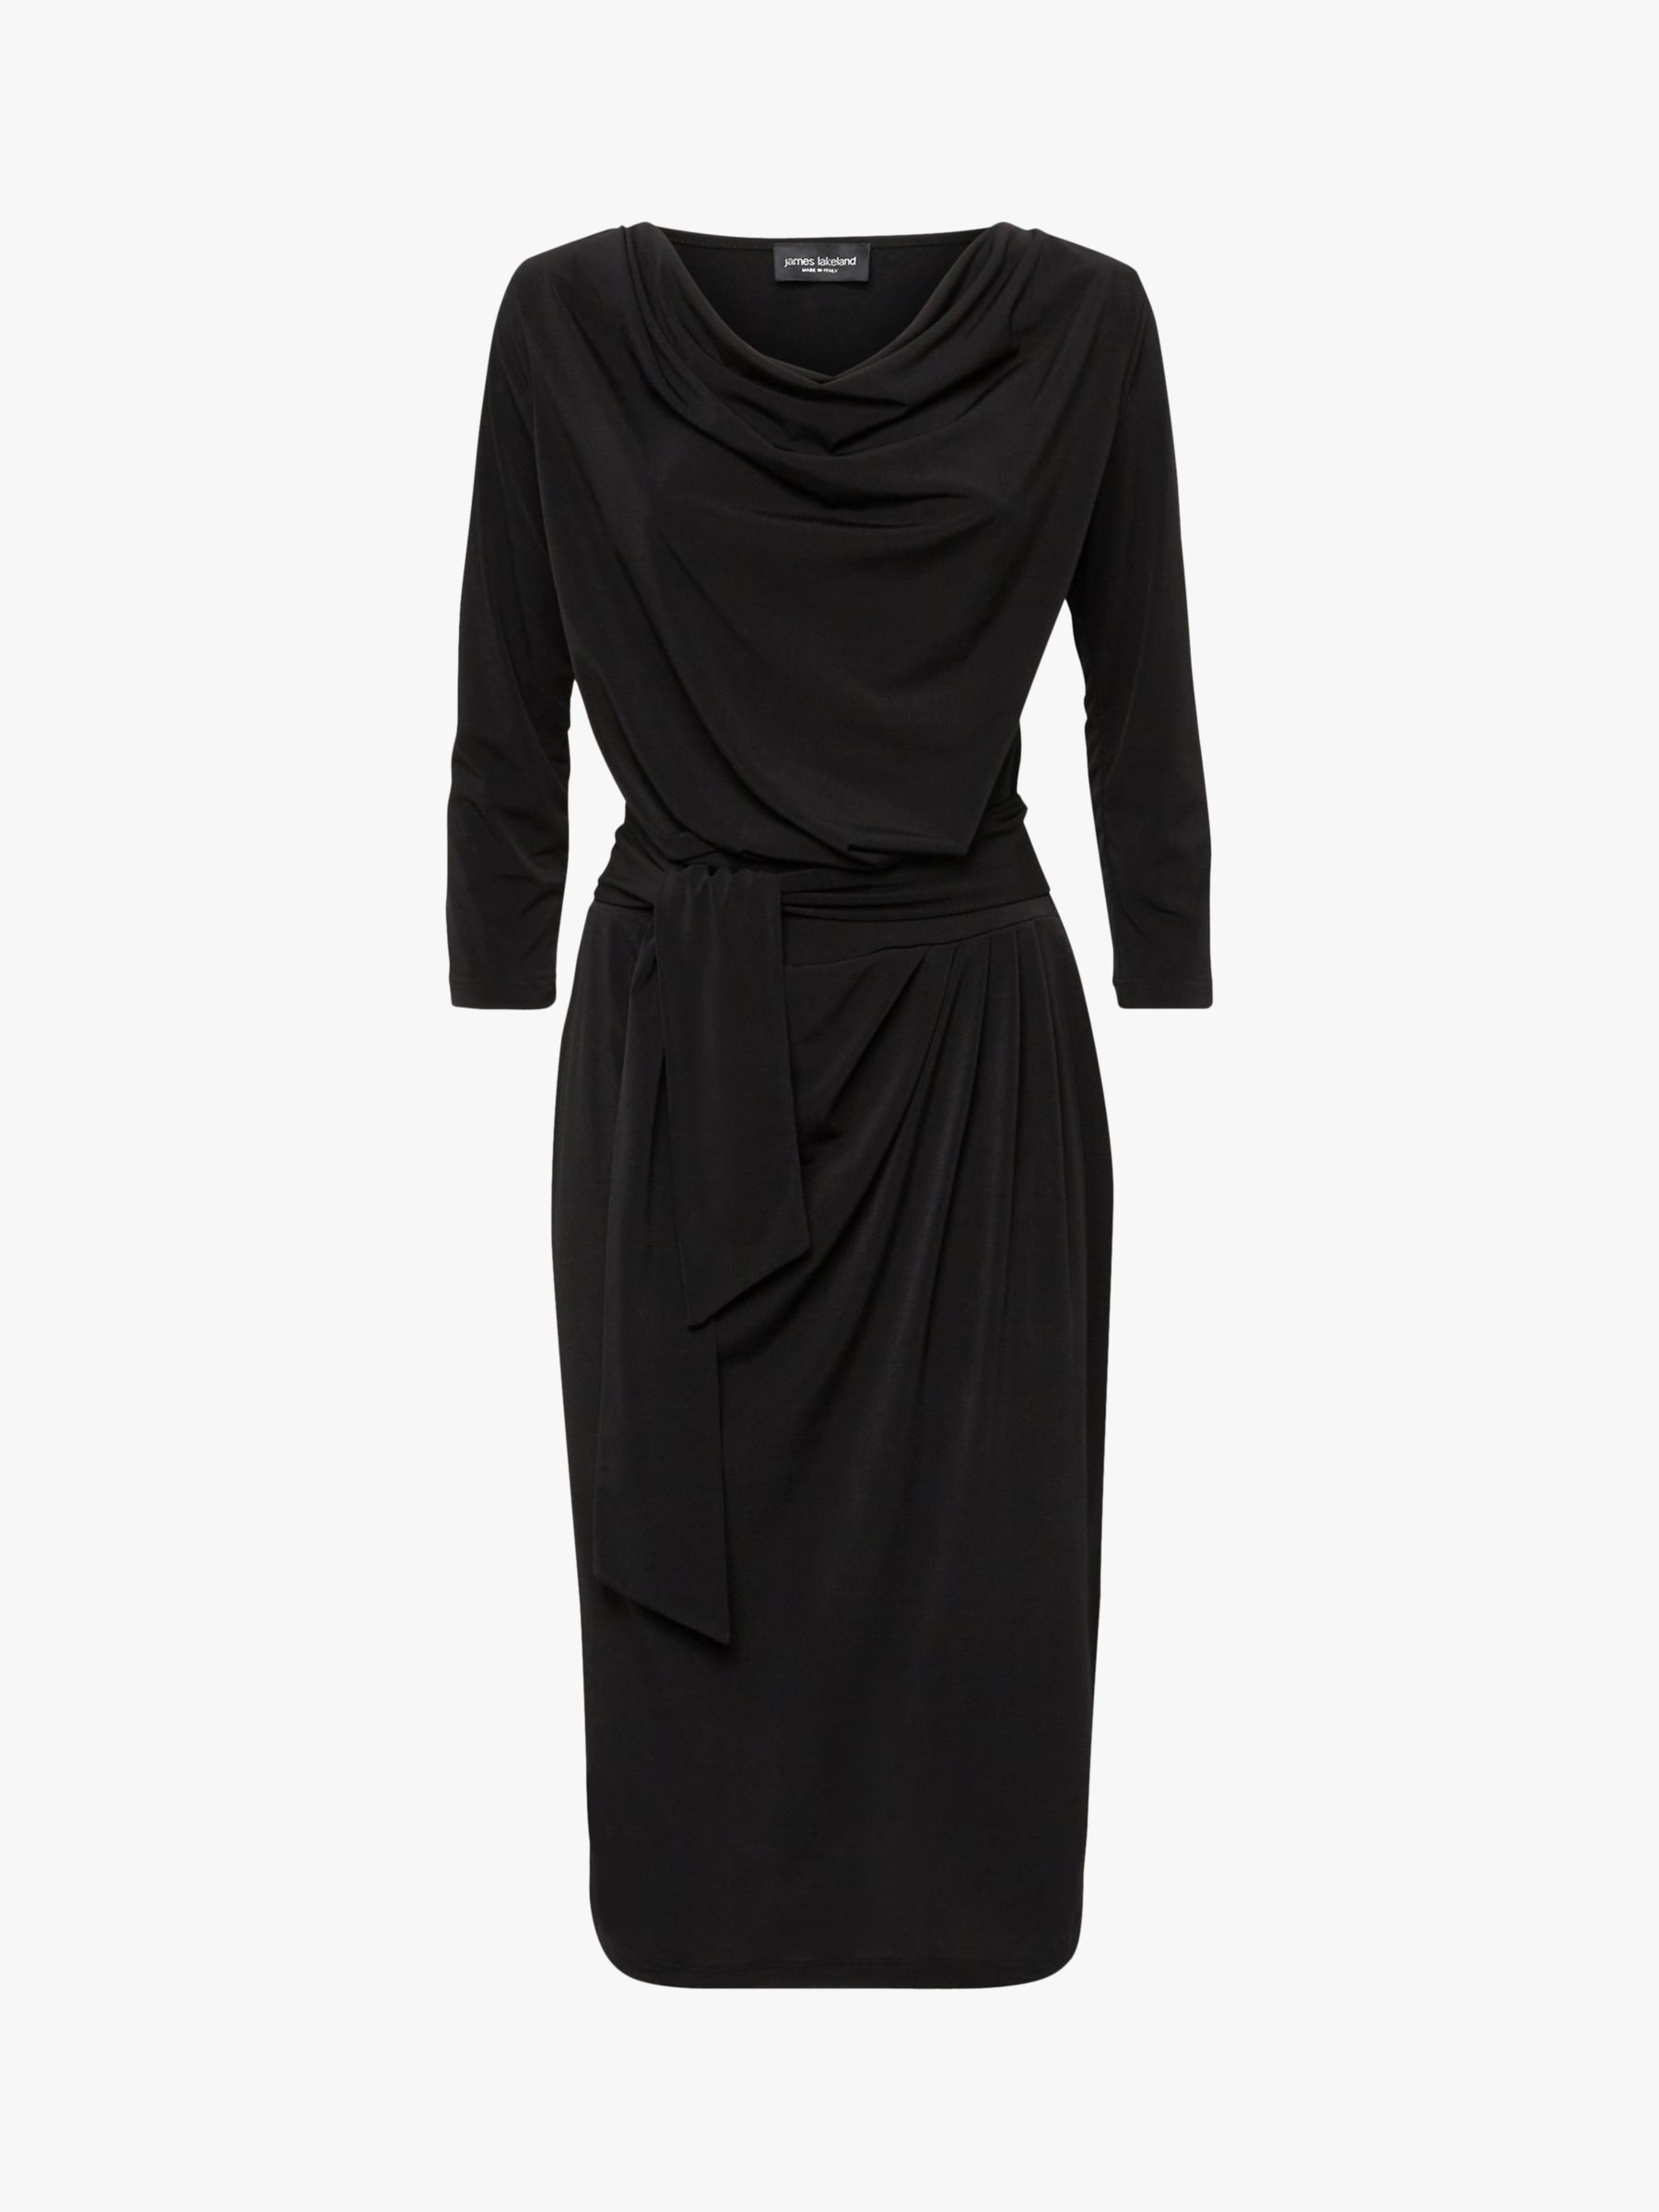 James Lakeland Ruched Belted Dress, Black at John Lewis & Partners